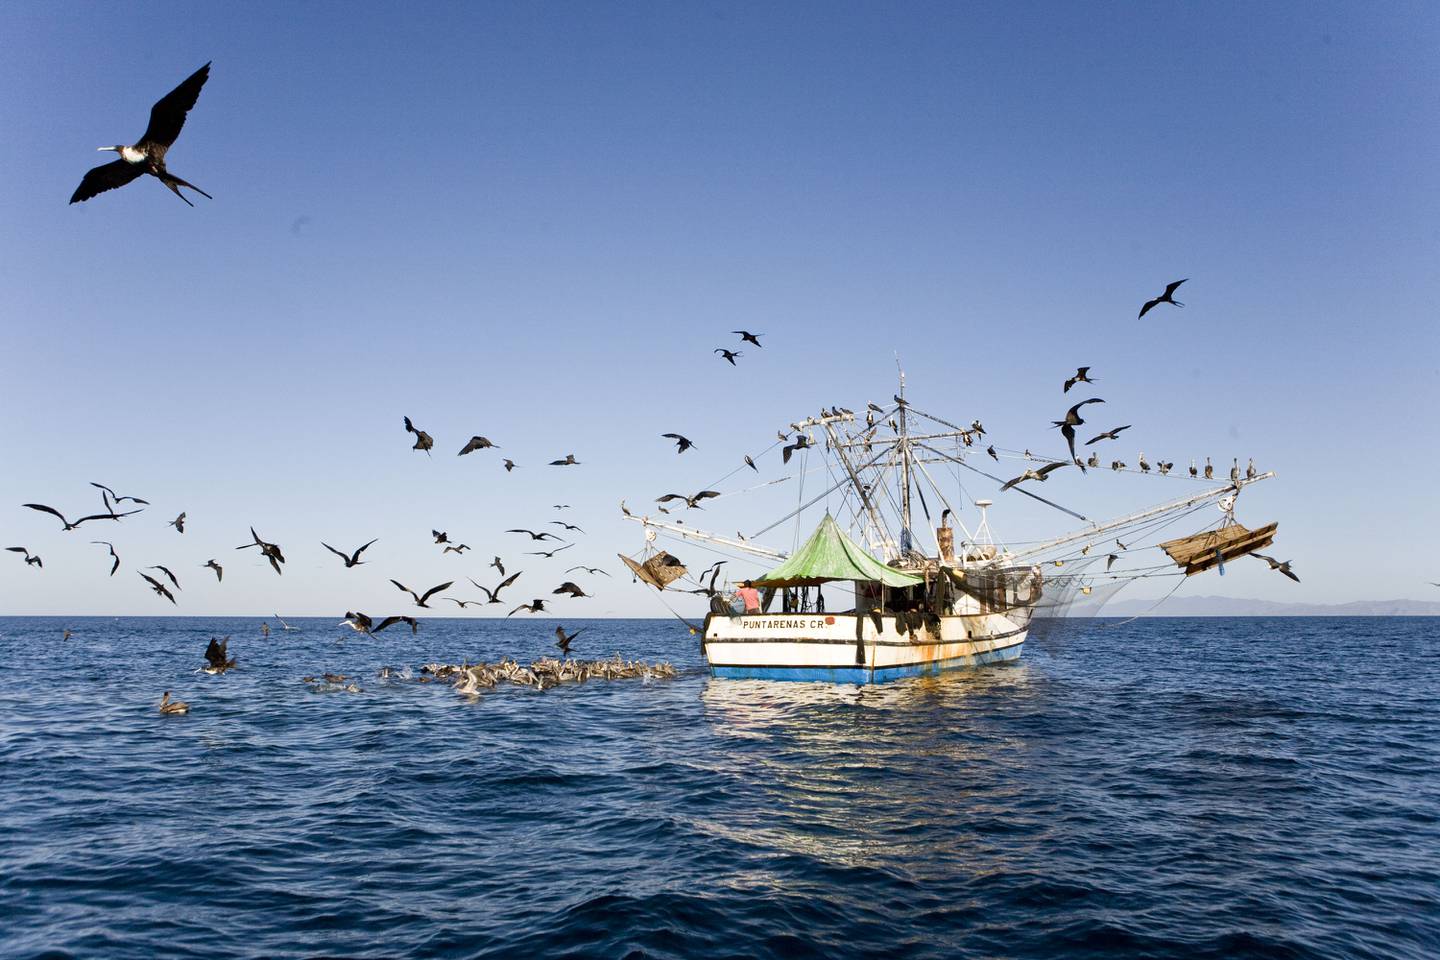 La pesca de arrastre, promovida en el estudio por Incopesca, ha generado críticas de sectores ambientalistas por el daño indirecto a otras especies marinas. Fotografía: Cortesía de MarViva.